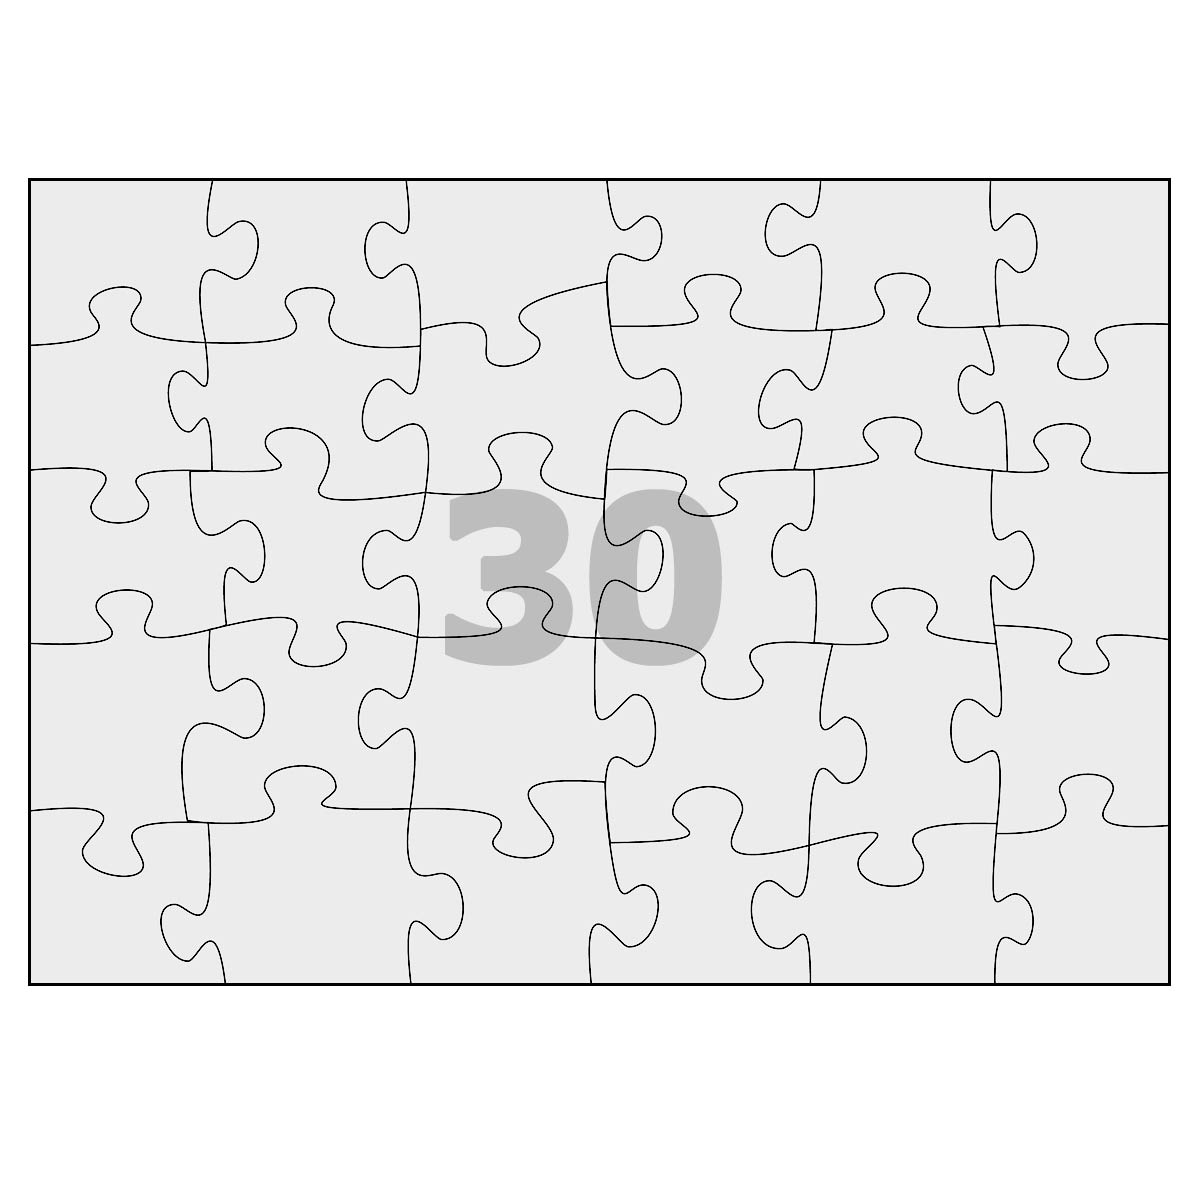 jigsaw puzzle pattern